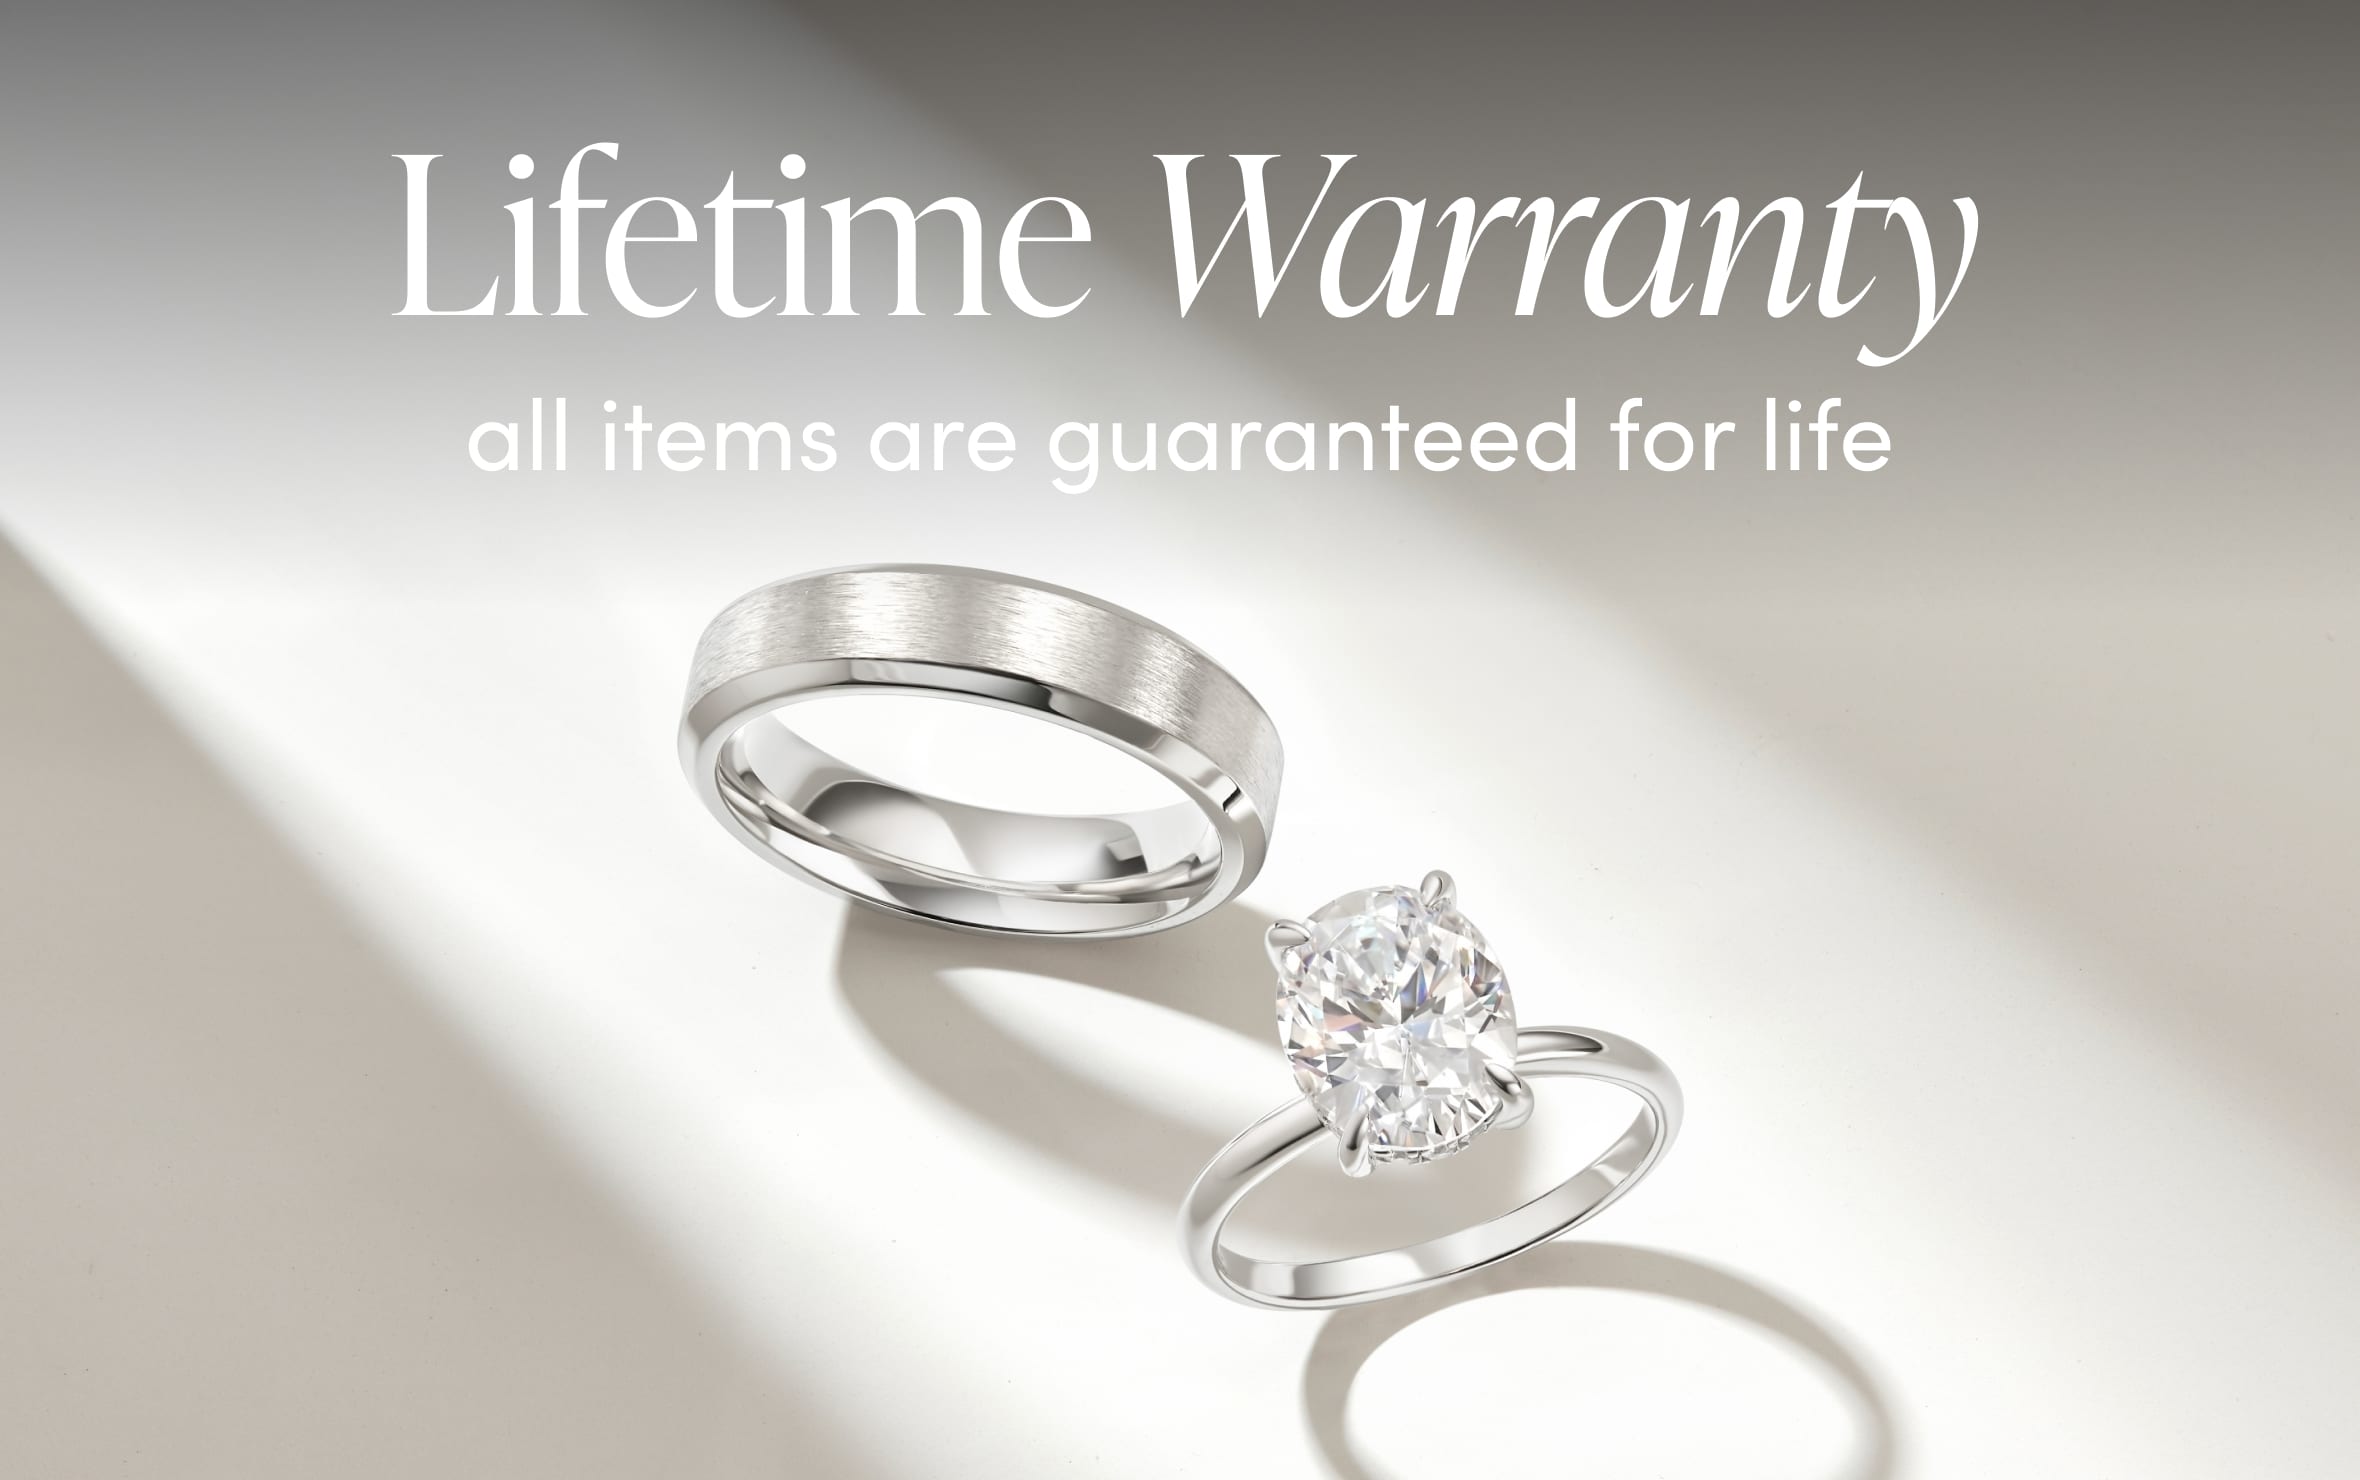 silver engagement rings lifetimewarranty 9dd139c7 6f55 4d6b 8234 d720c598c482